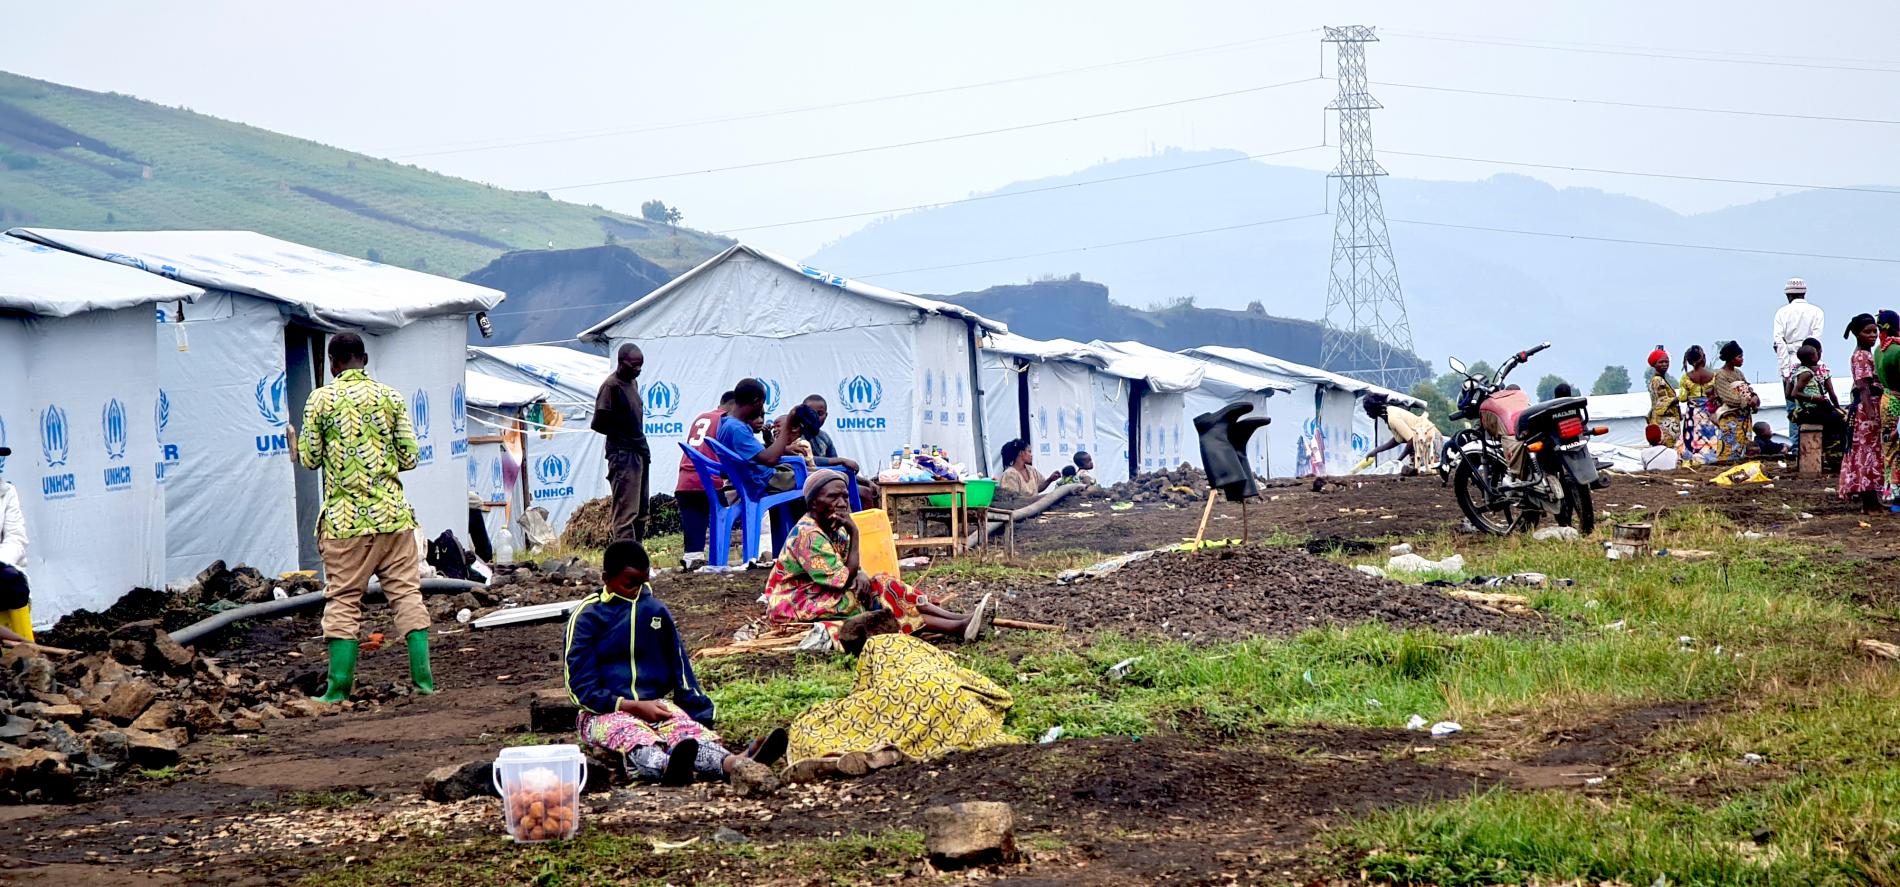 RDC - Environ 6,3 millions de personnes déplacées à l'intérieur du pays et la communauté qui les accueille sont exposées à des conditions potentiellement mortelles.